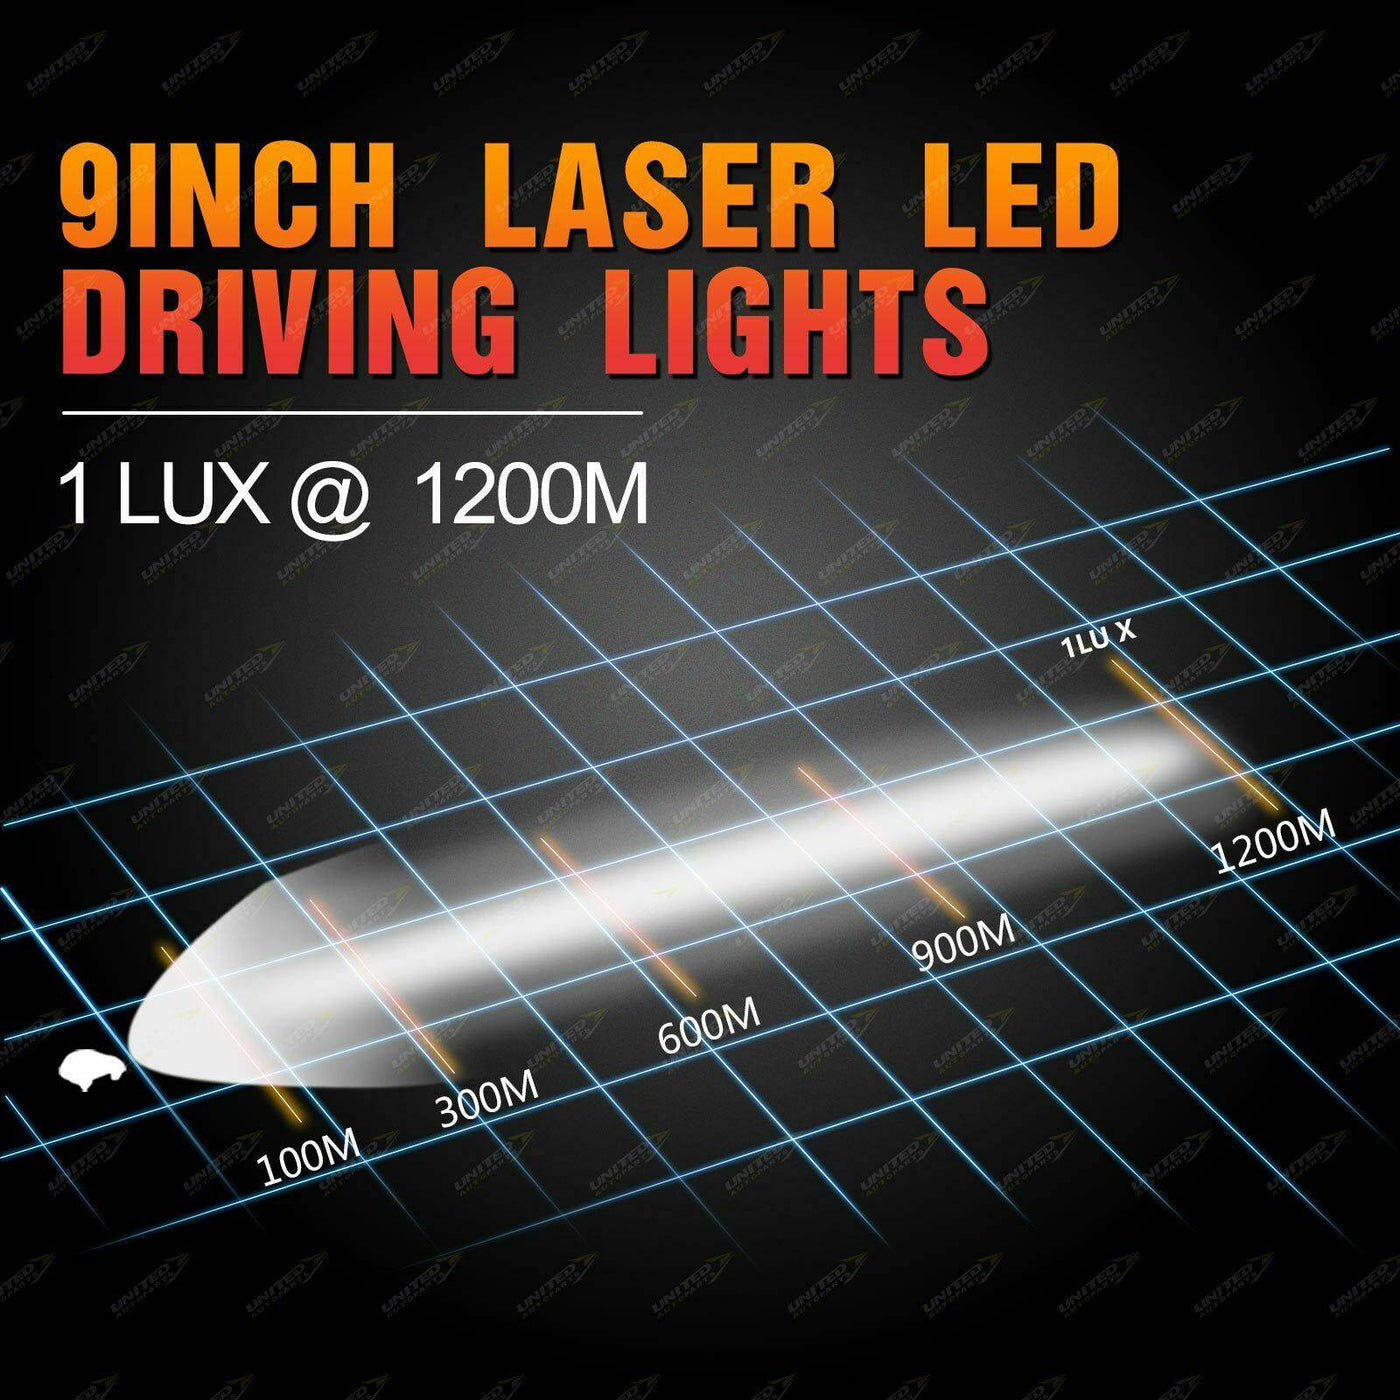 9" Laser LED Driving Spot Lights Round Offroad SUV 4x4 Truck Headlights - OZI4X4 PTY LTD